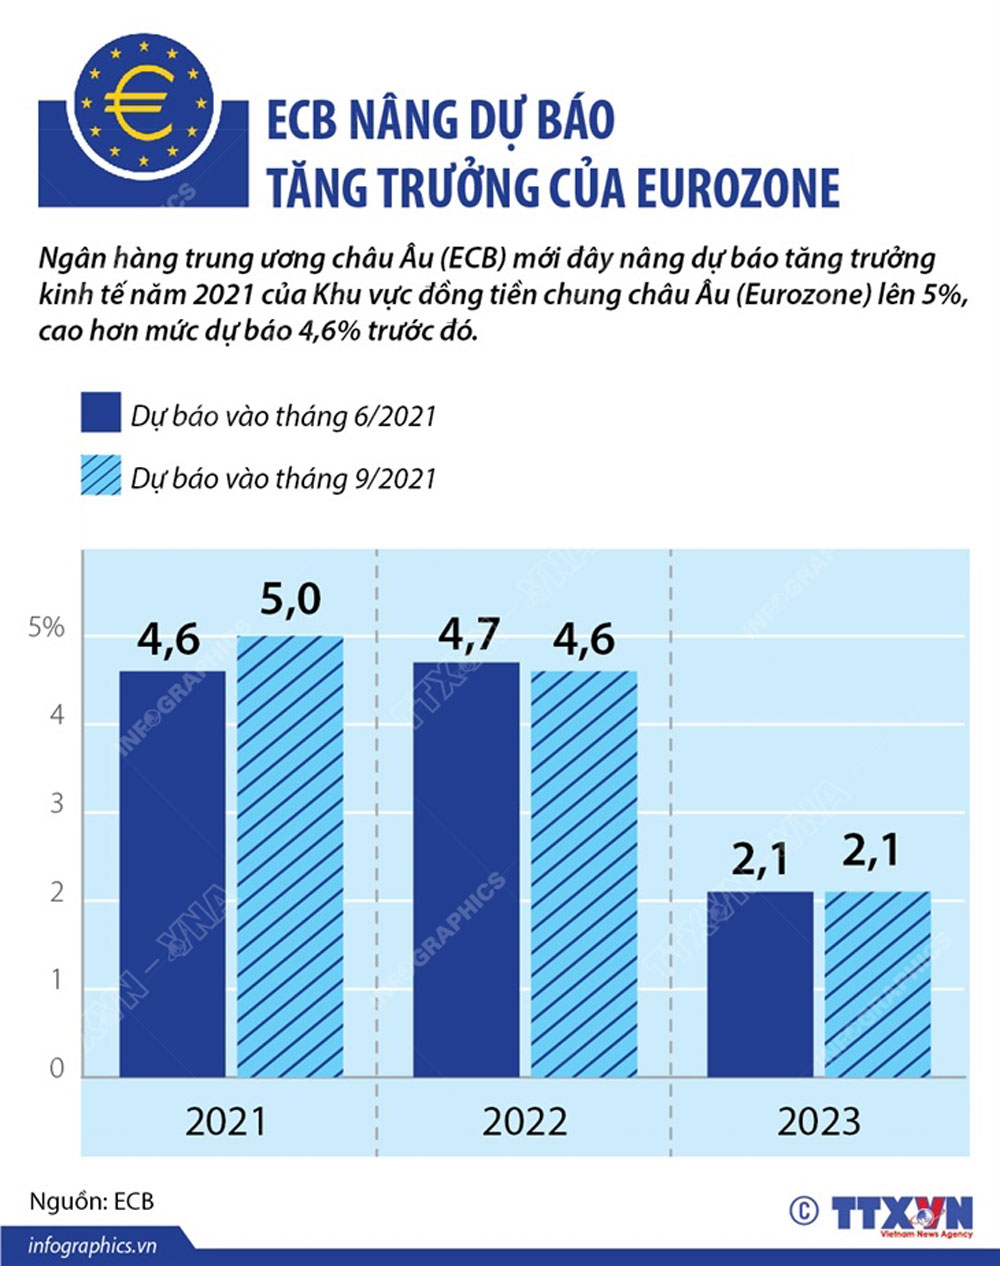 ECB nâng dự báo tăng trưởng của Eurozone